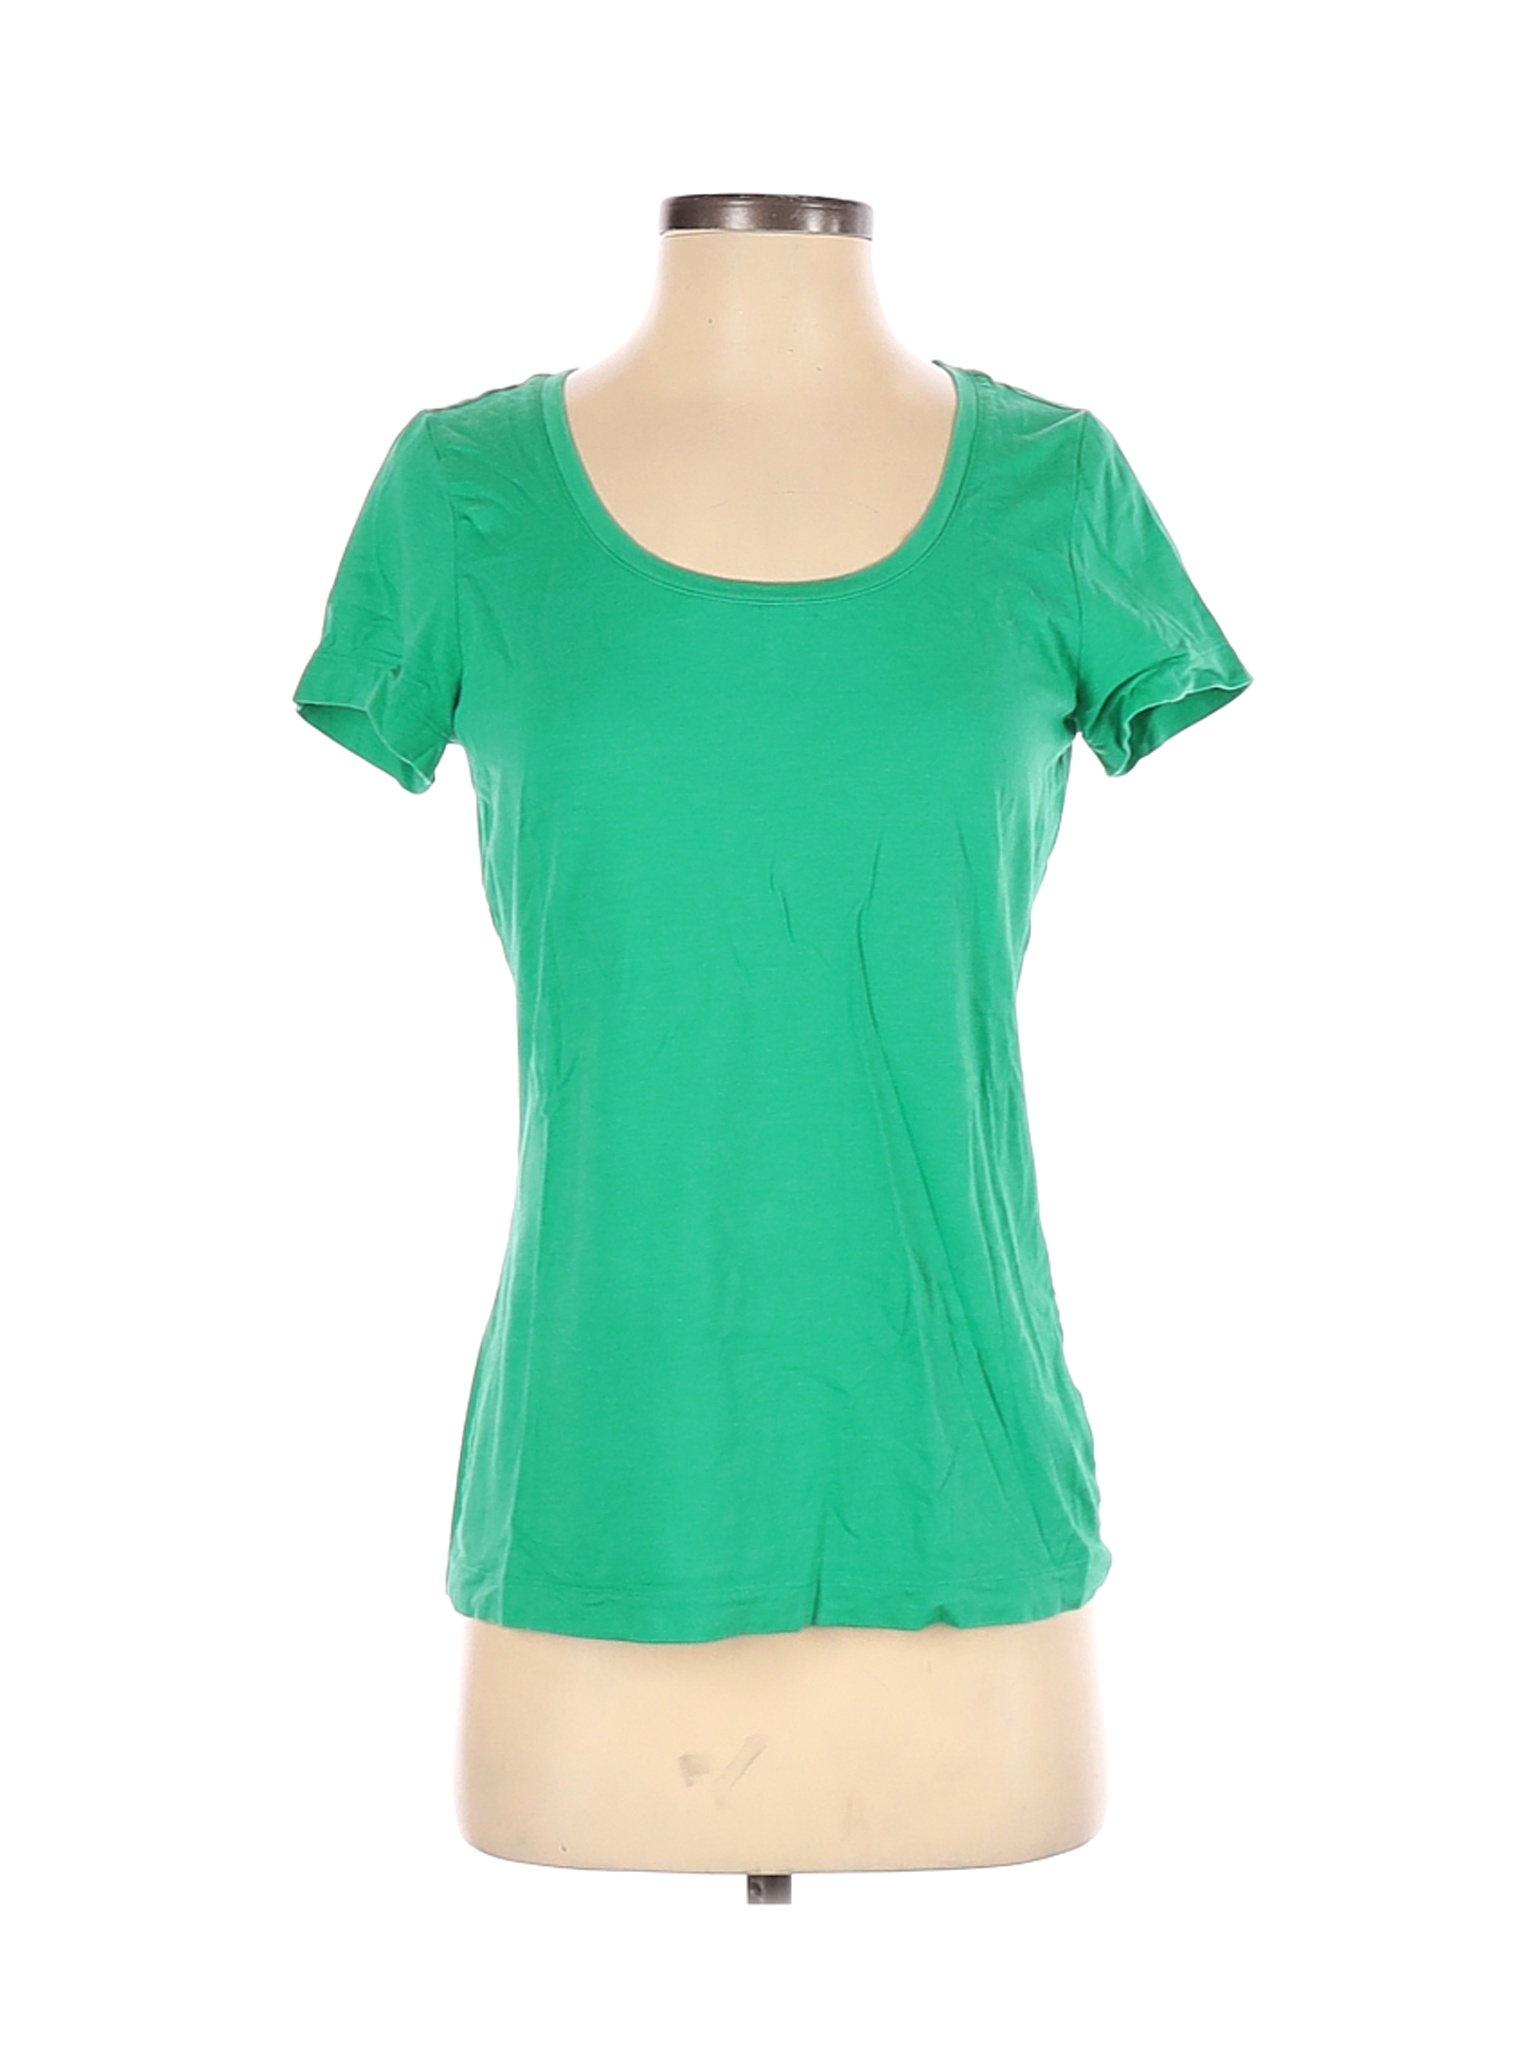 Lands' End Women Green Short Sleeve T-Shirt S | eBay